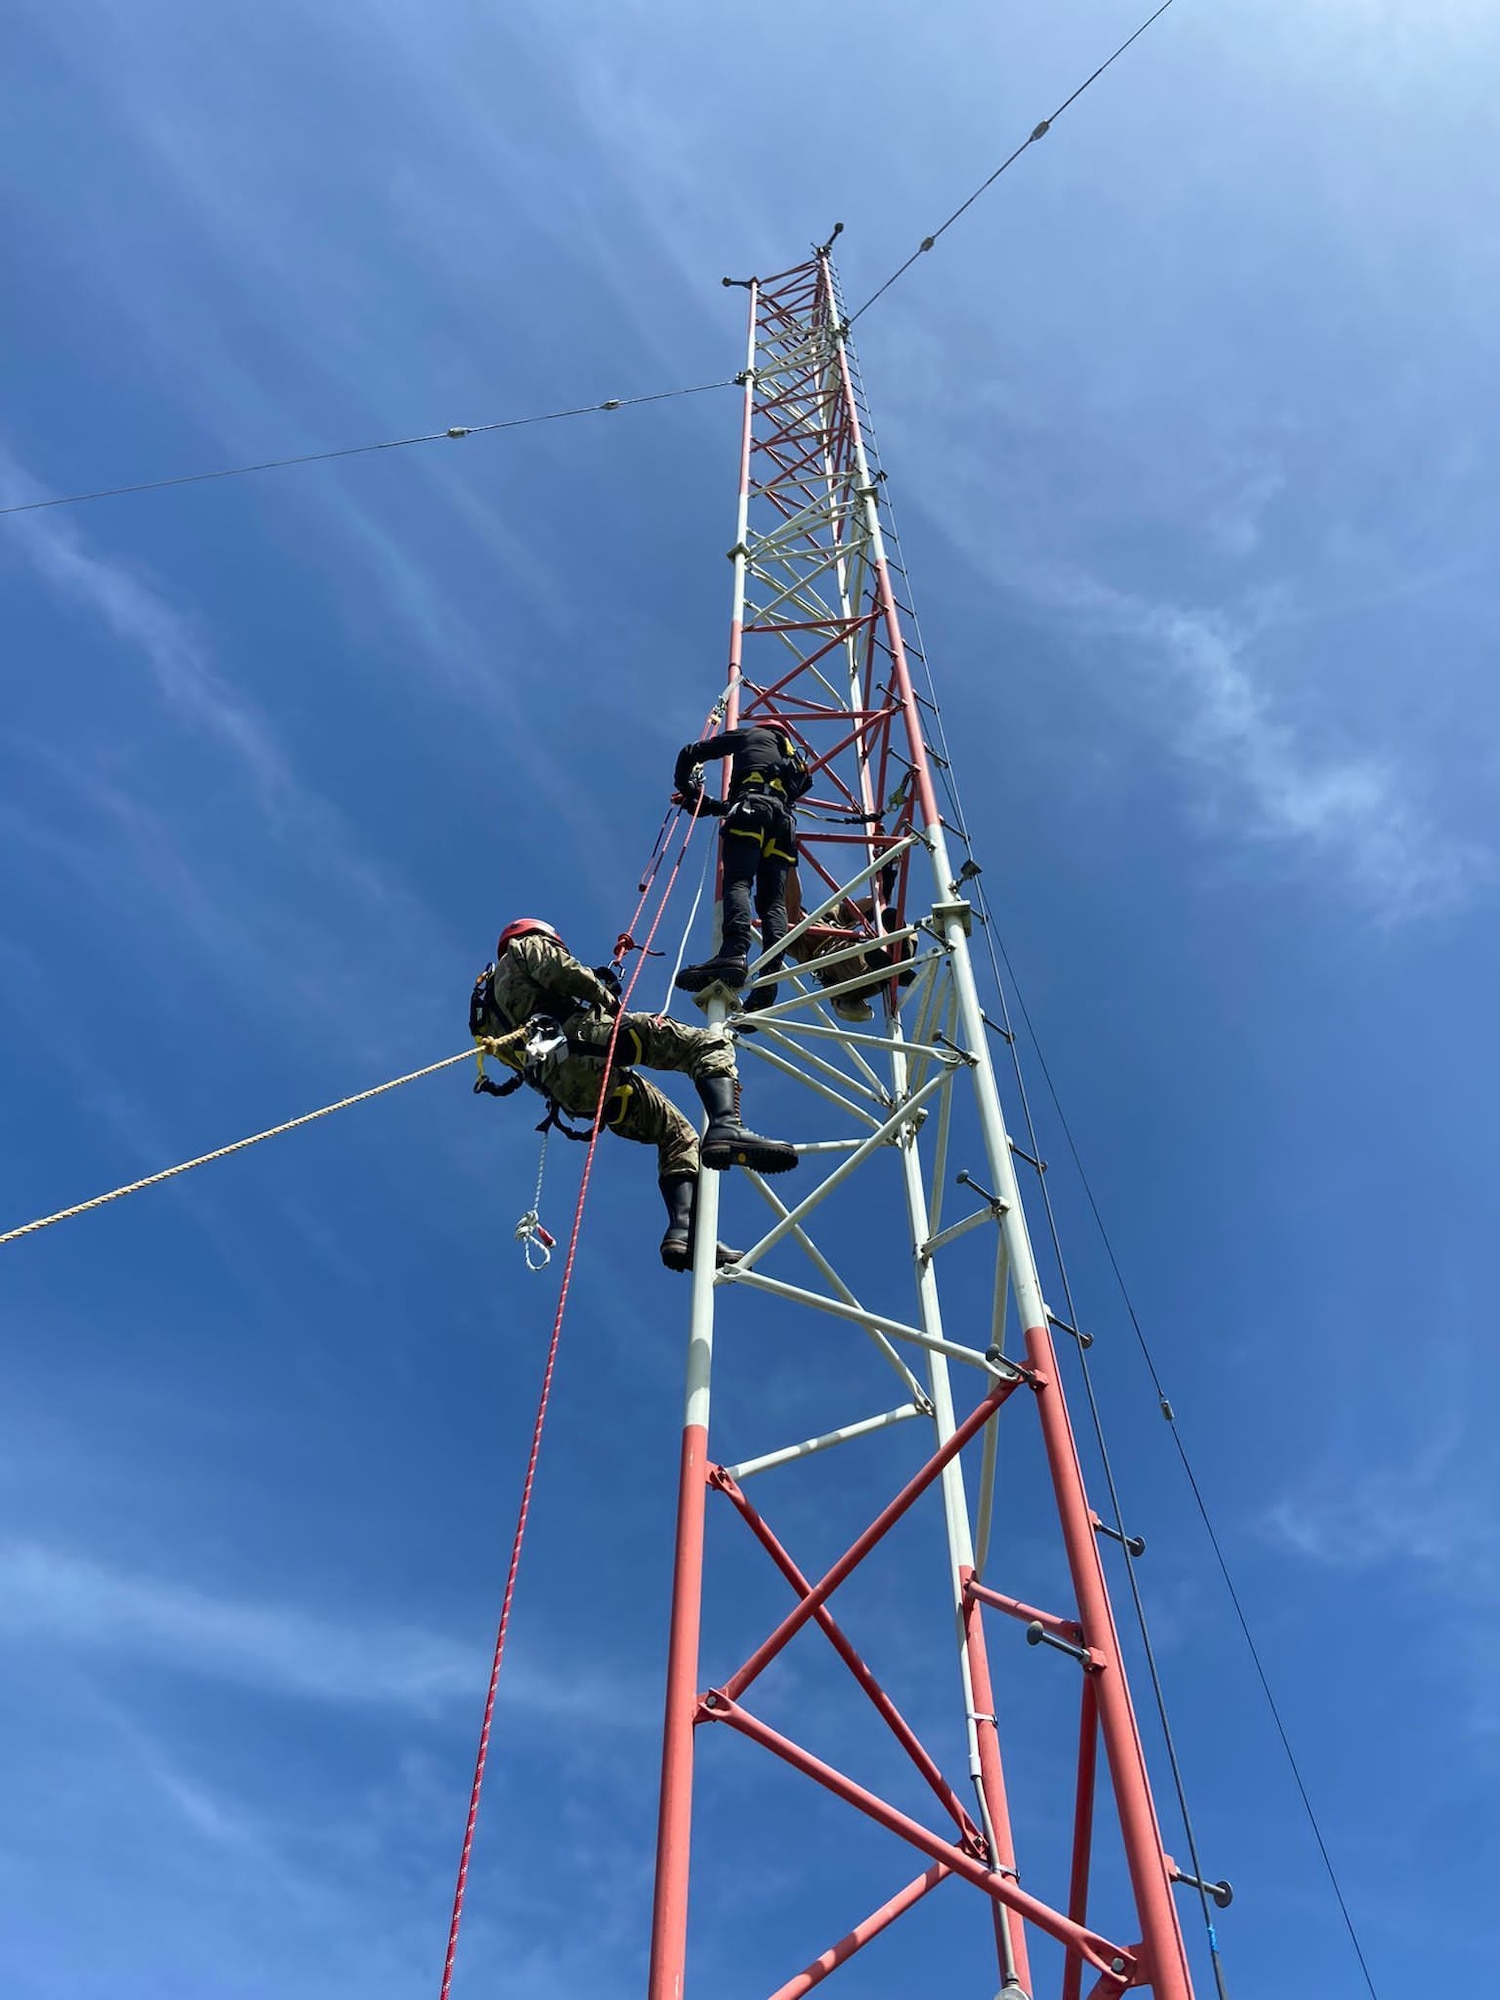 Two Airmen climbing an antenna tower.